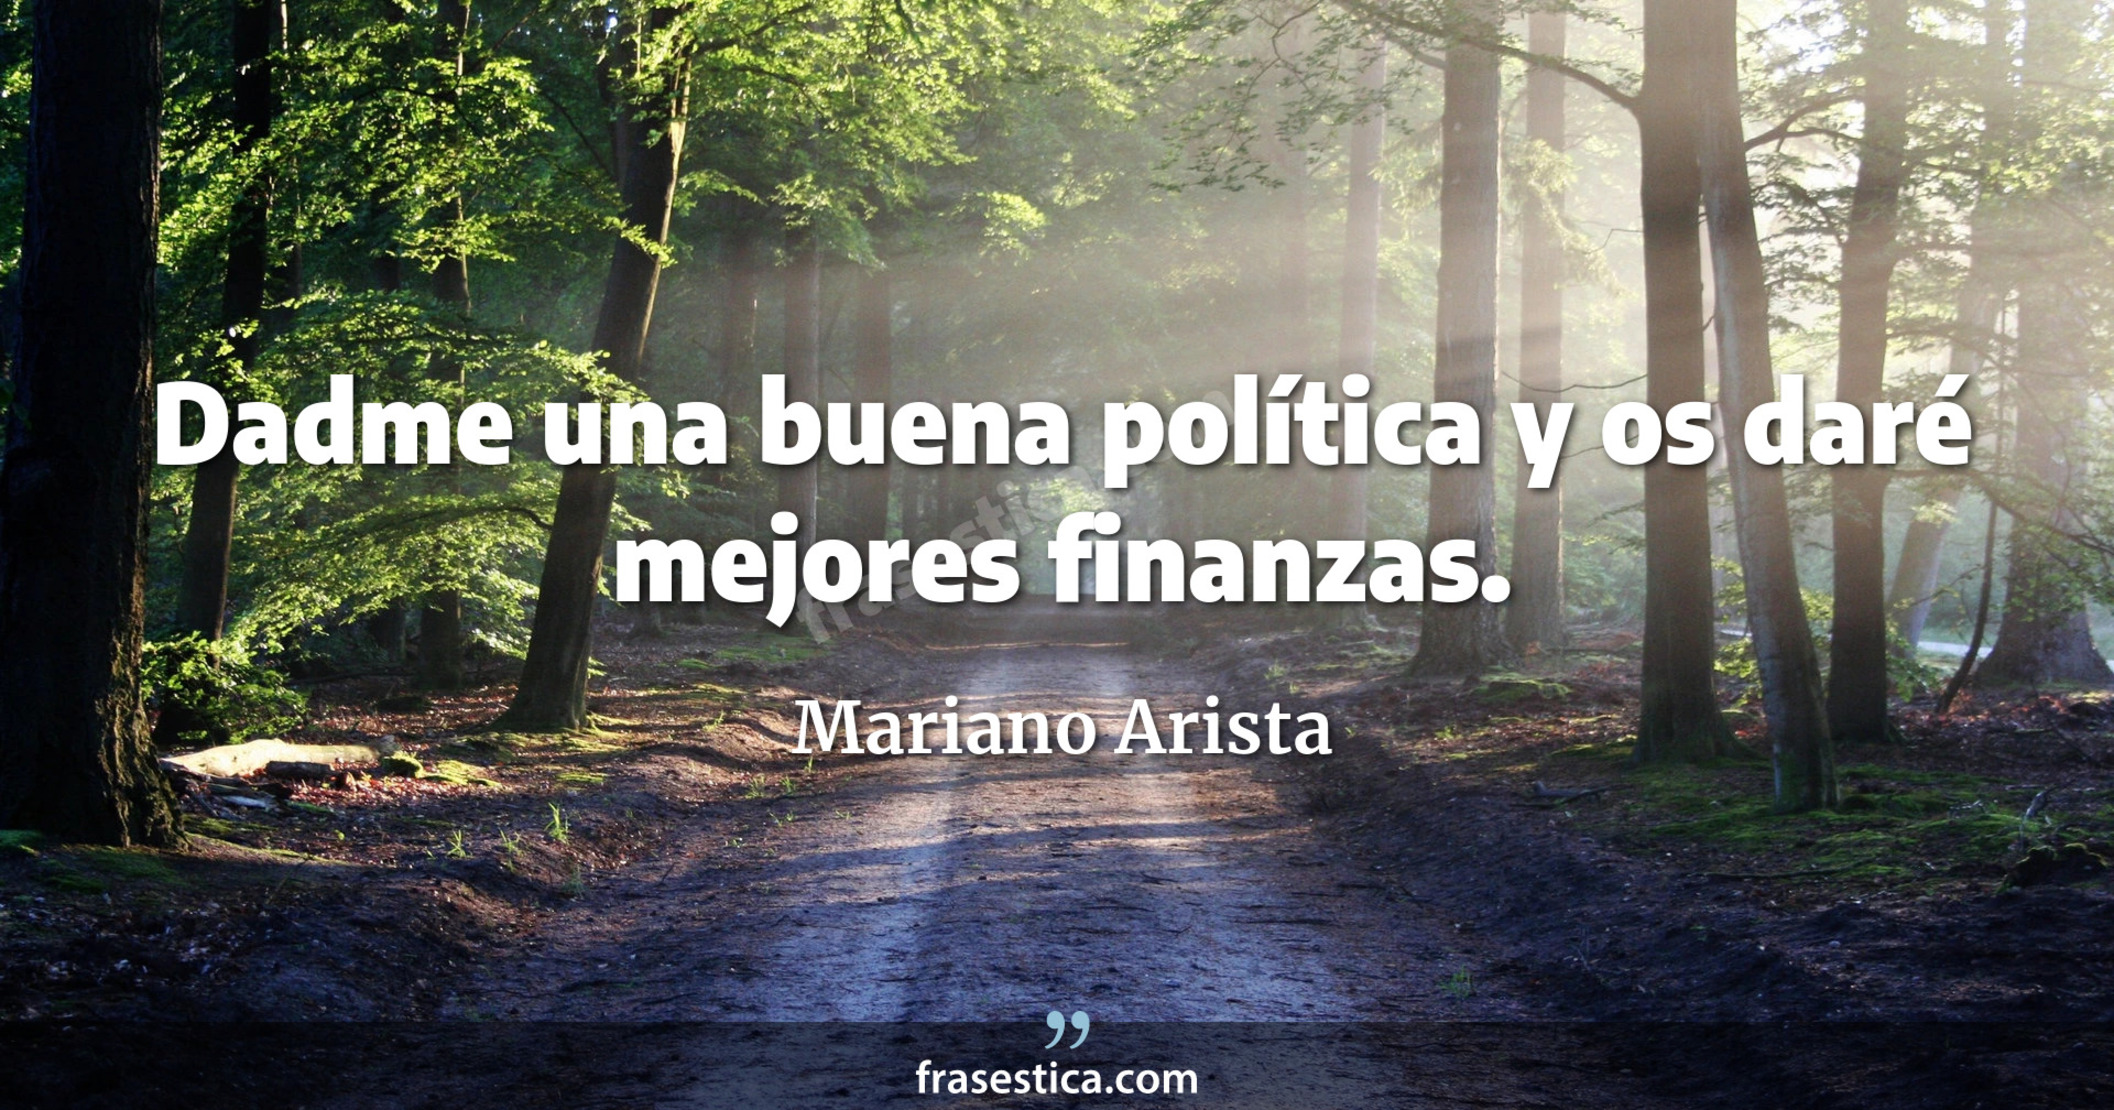 Dadme una buena política y os daré mejores finanzas. - Mariano Arista